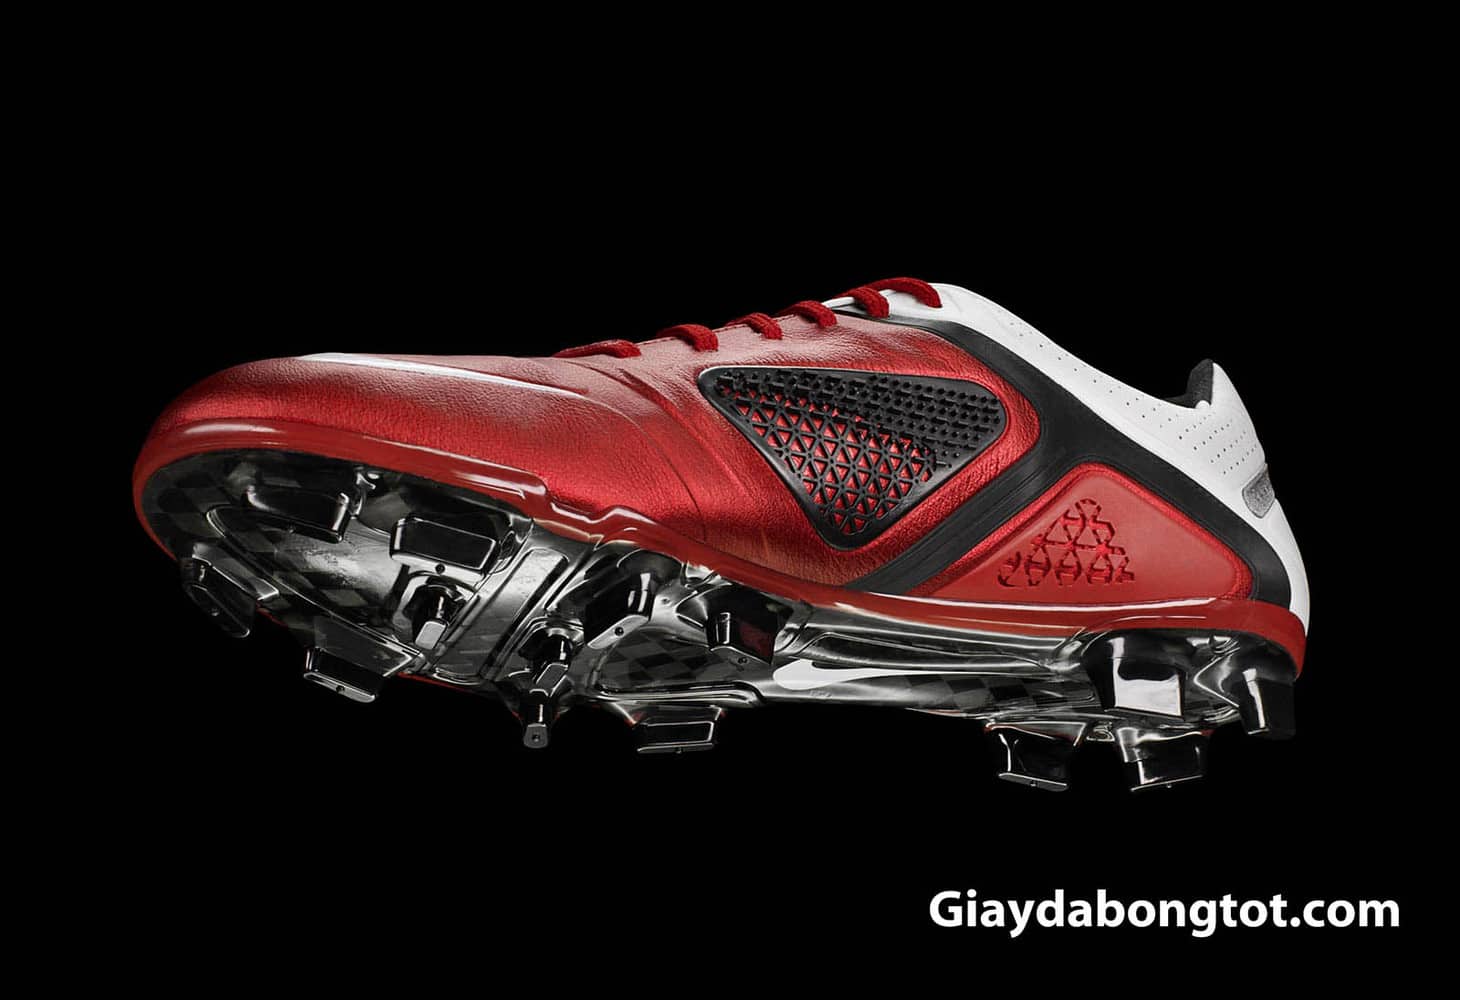 Giày đá bóng NIke CRR360 được thiết kế để tăng khả năng kiểm soát bóng